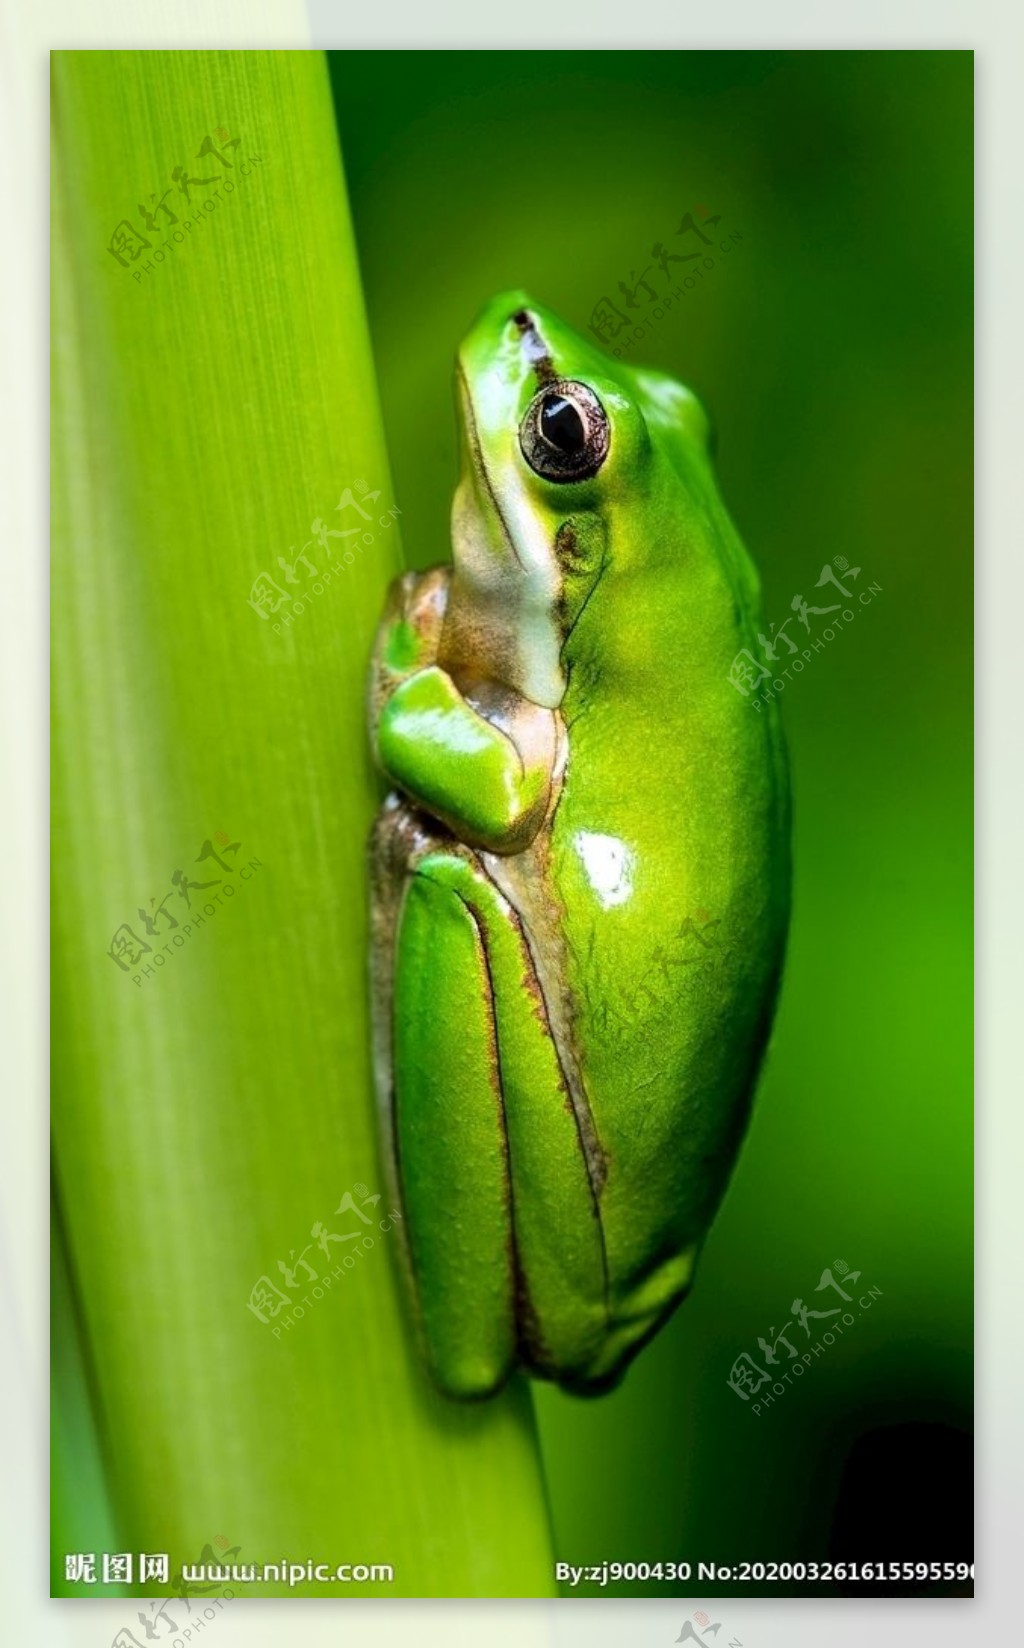 鲜艳绿色有毒树蛙